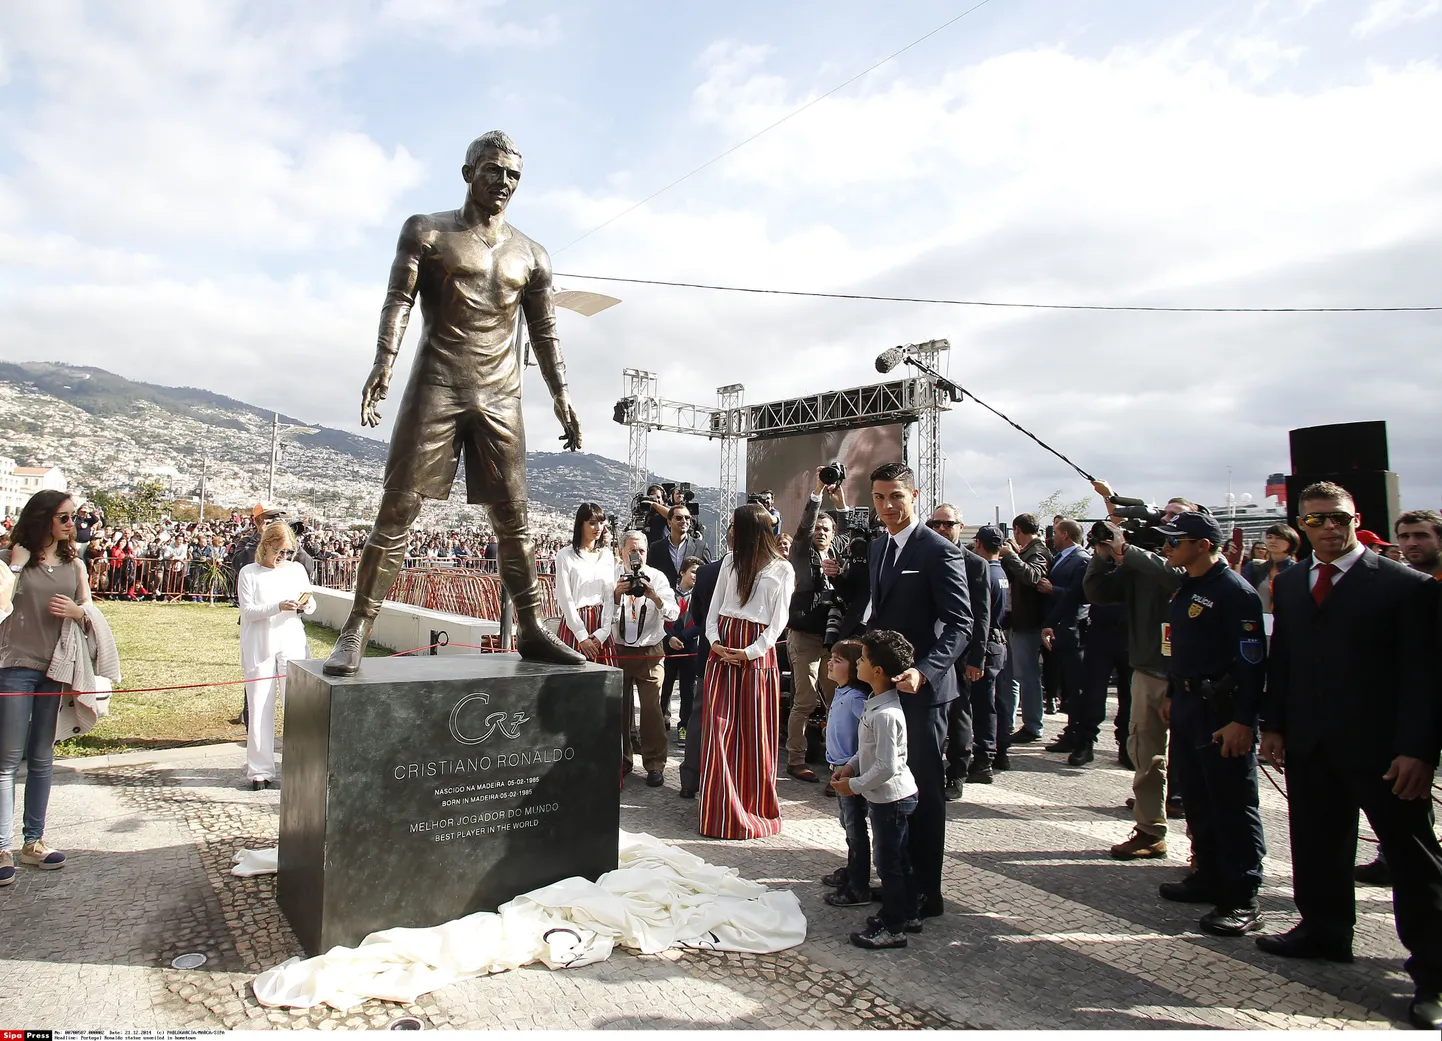 Открытие памятника Криштиану Роналду на Мадейре.